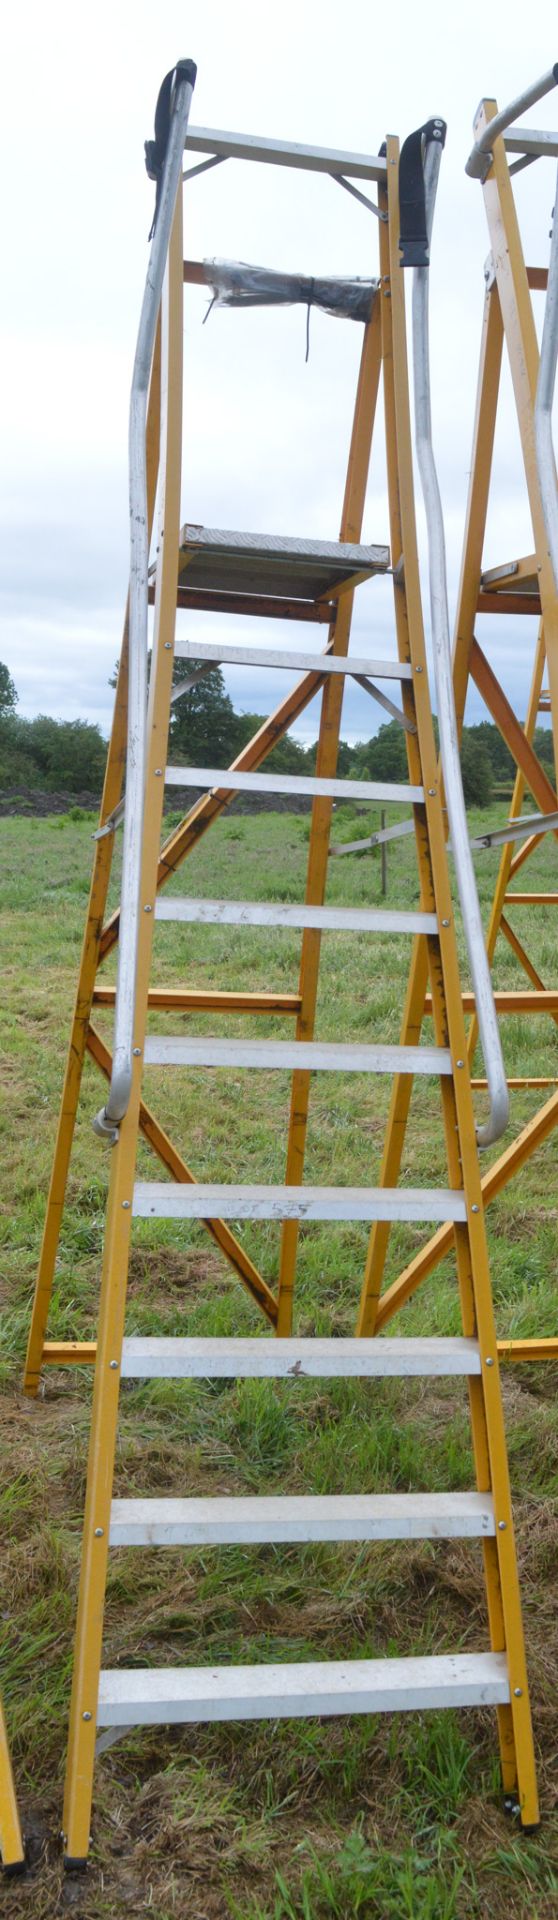 9 tread glass fibre framed step ladder E0011754